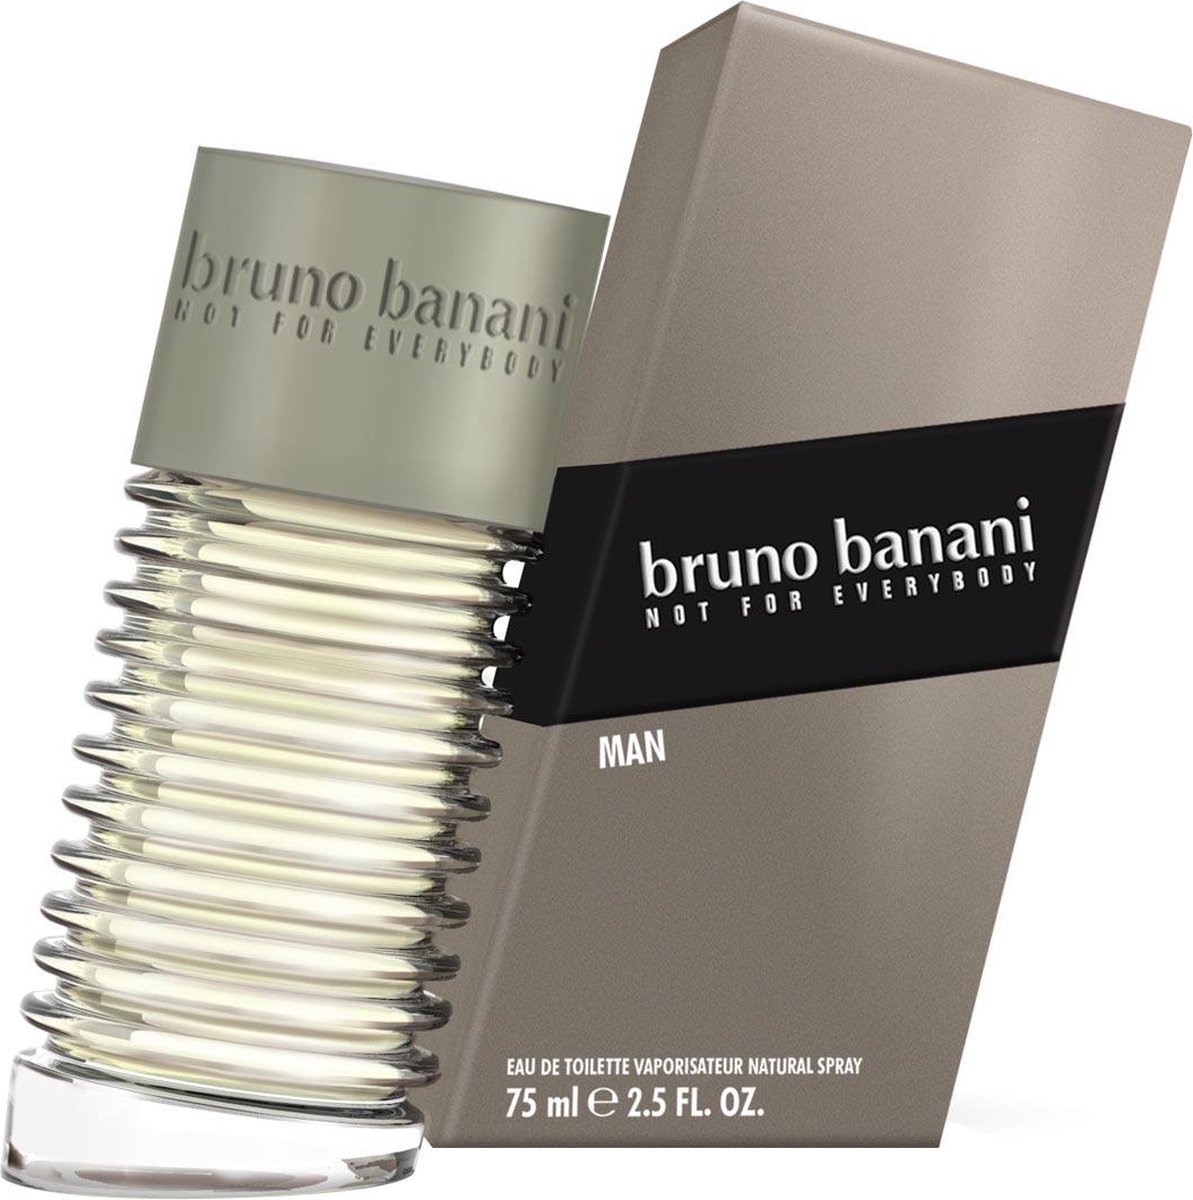 Bruno Banani Man - EDT